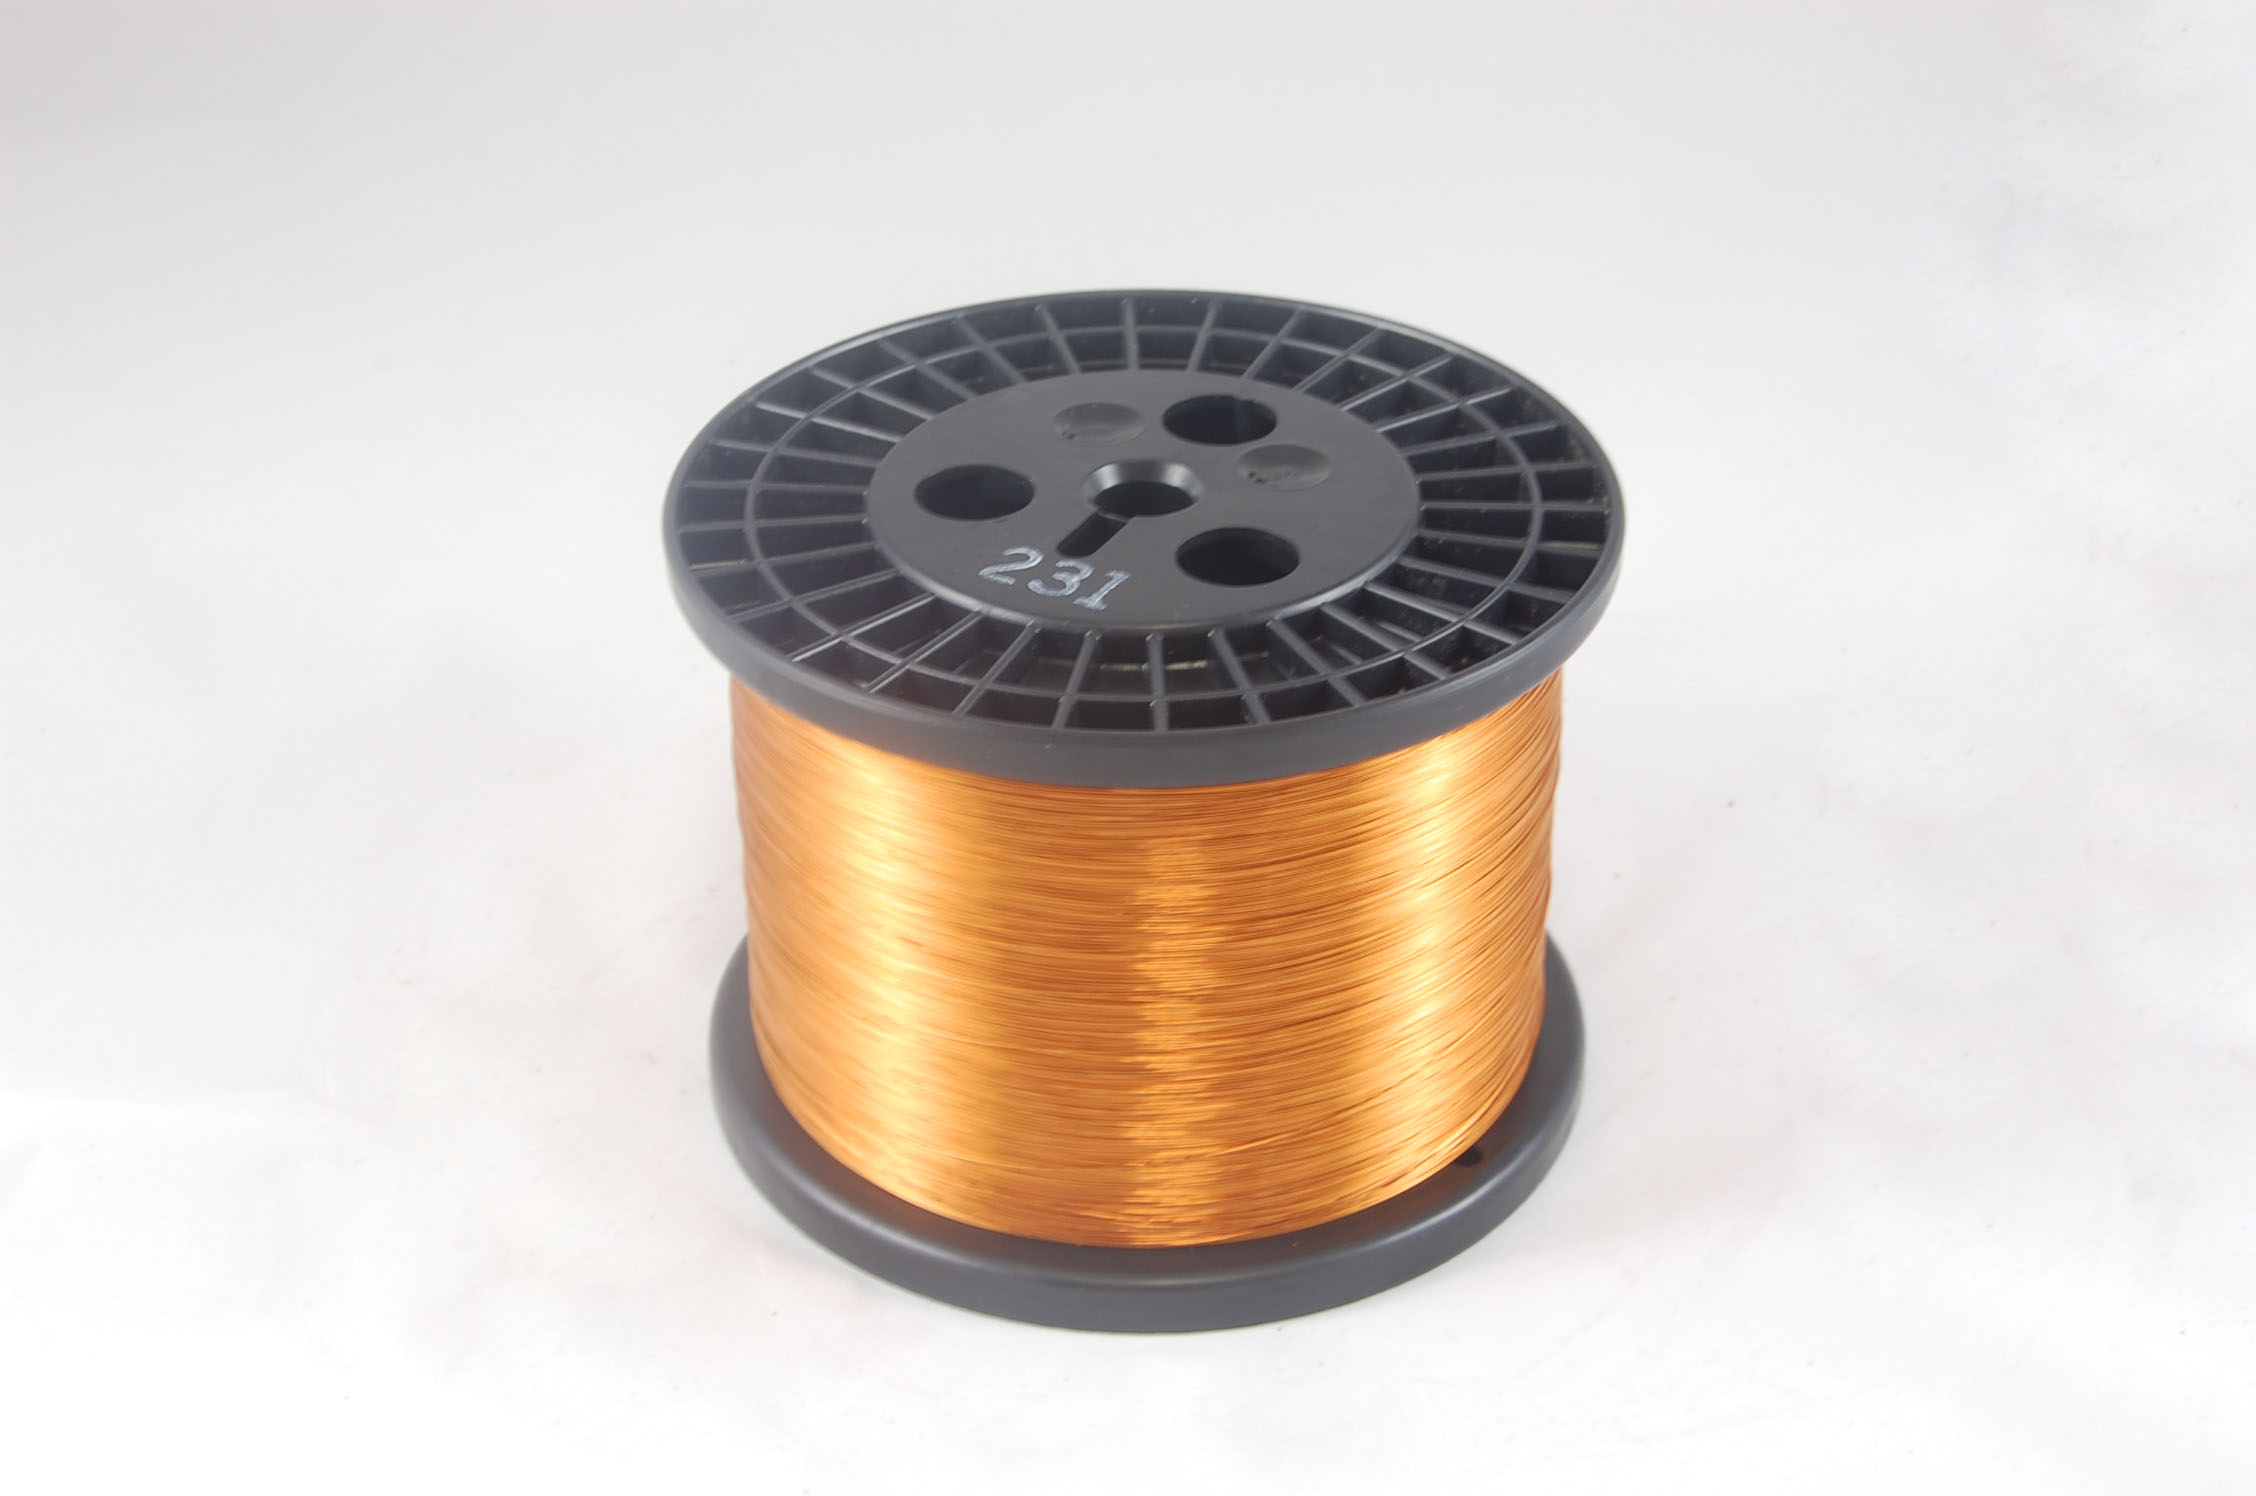 #26 Heavy GP/MR-200 Round MW 35 Copper Magnet Wire 200°C, copper, 10 LB 6" spool (average wght.)